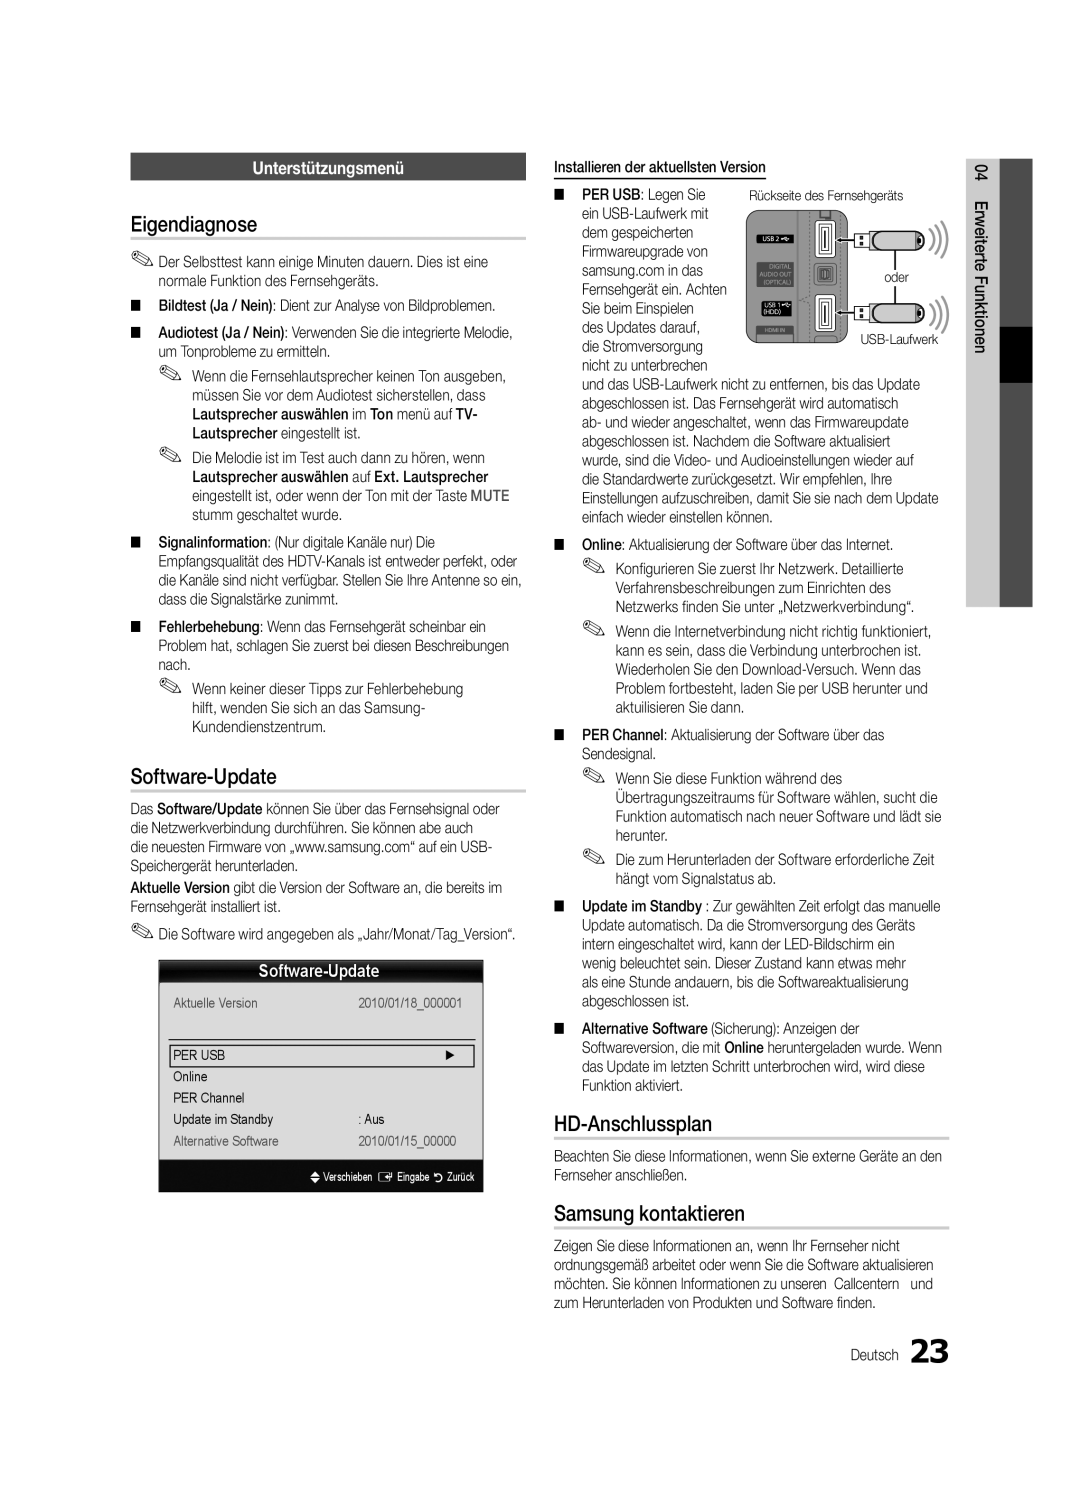 Samsung UE37C5700QSXZG manual Eigendiagnose, Software-Update, HD-Anschlussplan, Samsung kontaktieren, Unterstützungsmenü 